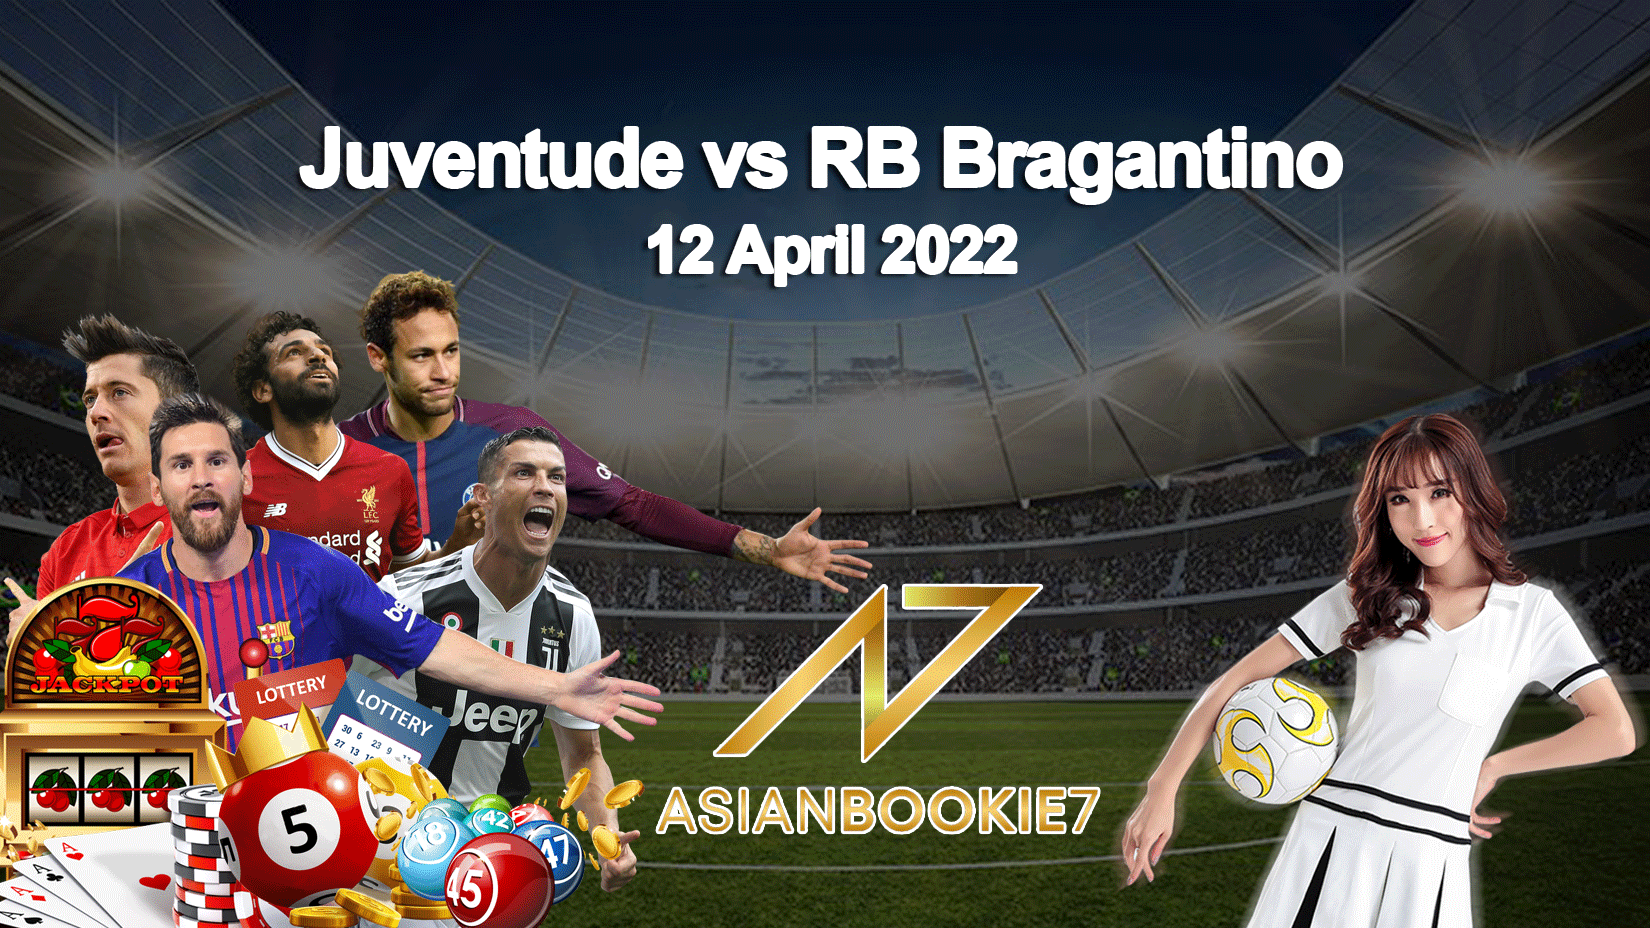 Prediksi Juventude vs RB Bragantino 12 April 2022